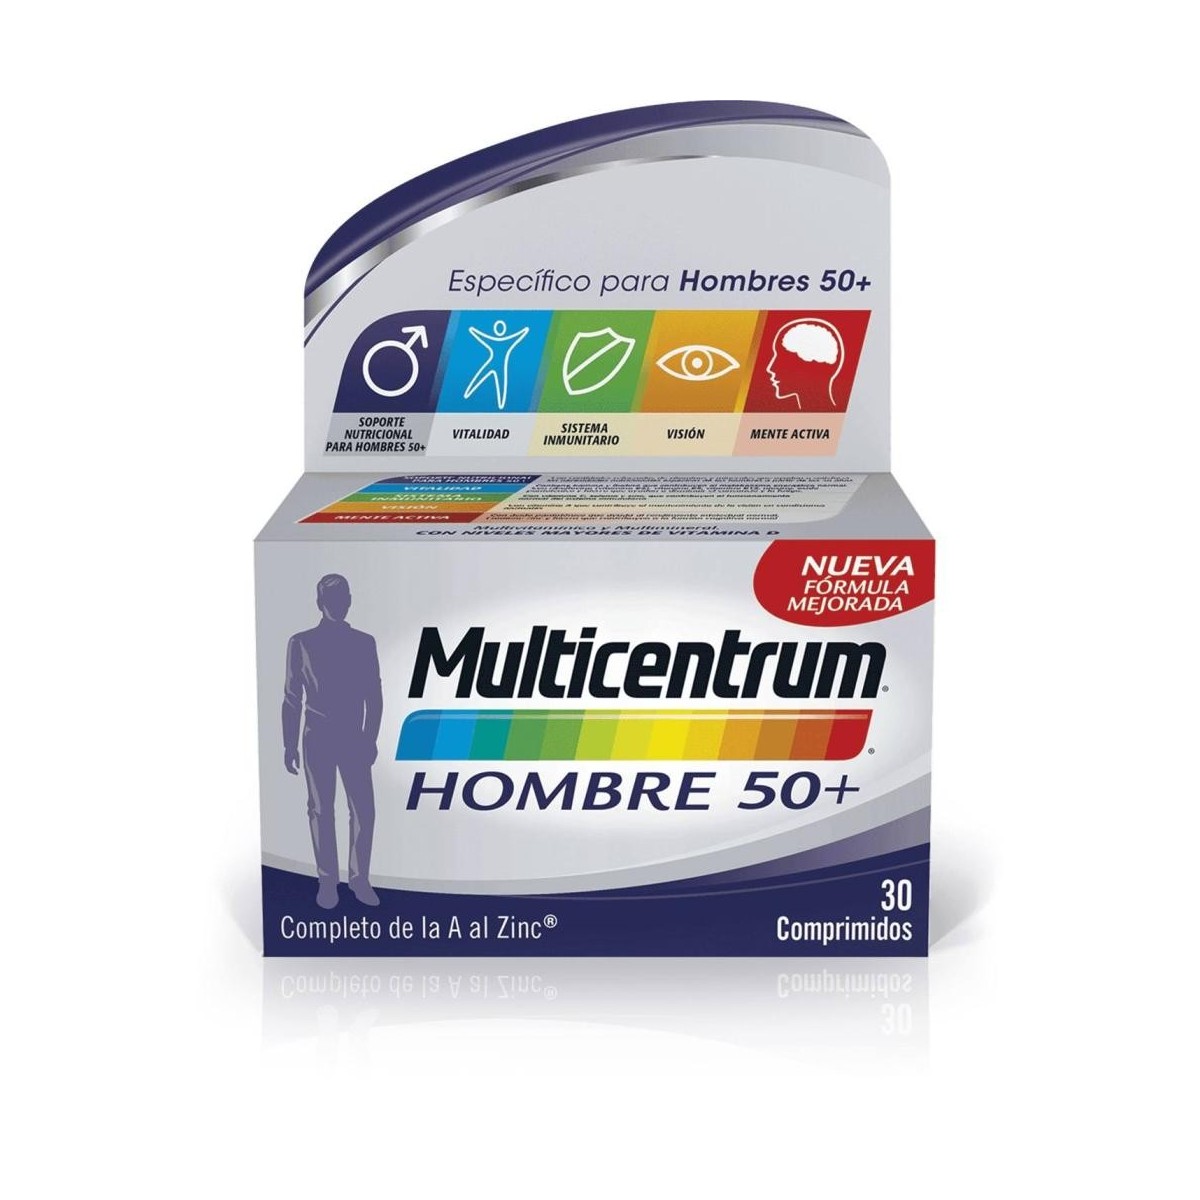 multicentrum 30 comprimidos hombre 50